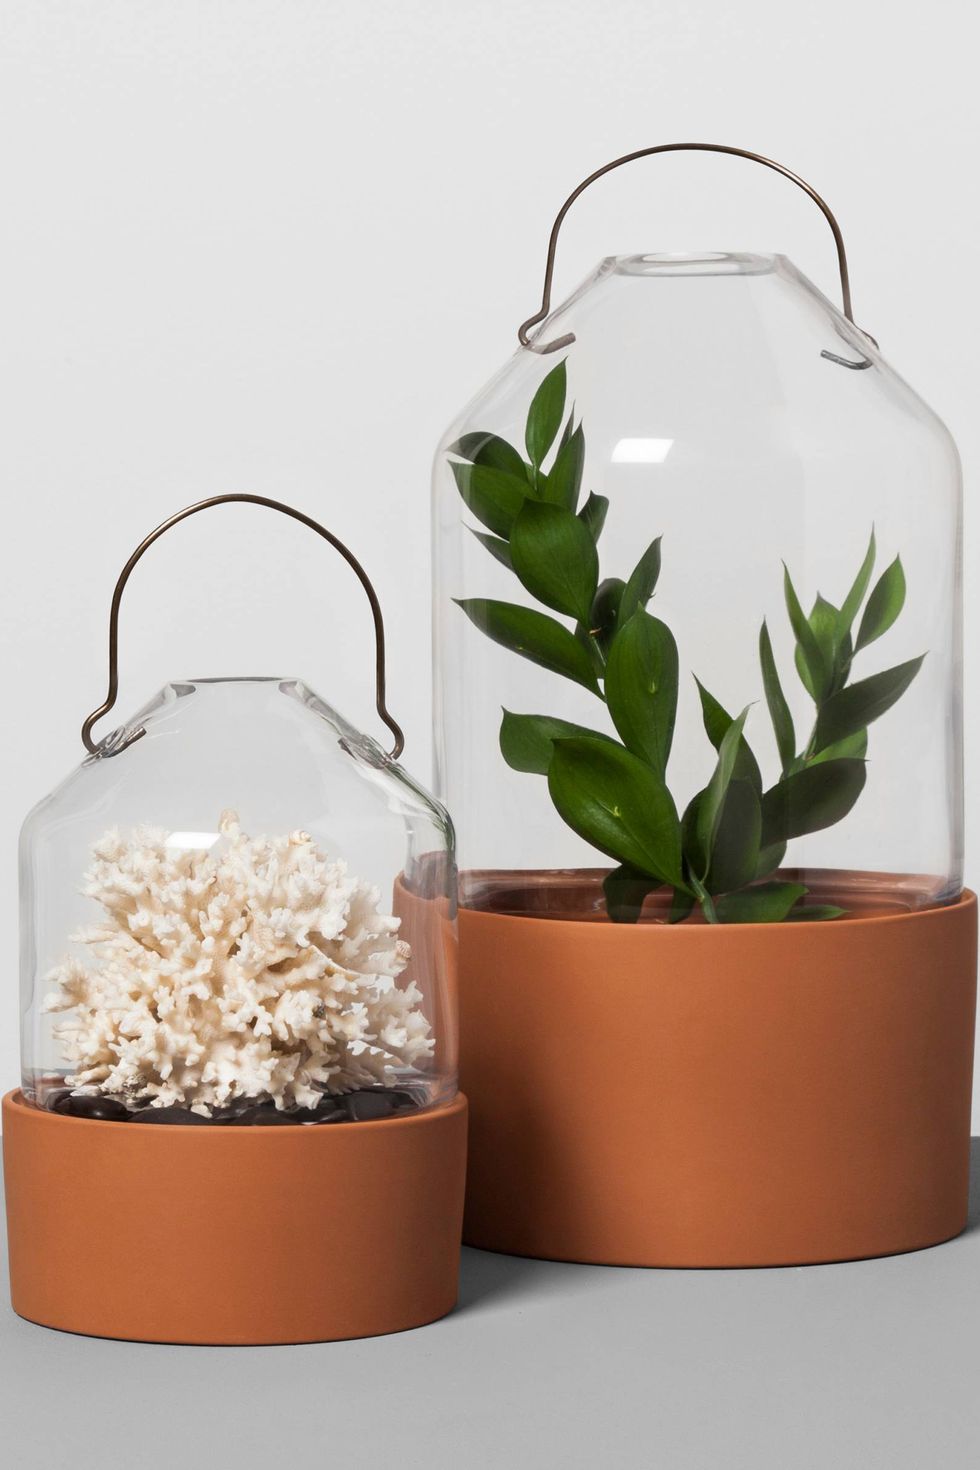 Flowerpot, White, Cactus, Flower, Plant, Houseplant, Room, Succulent plant, Glass, 